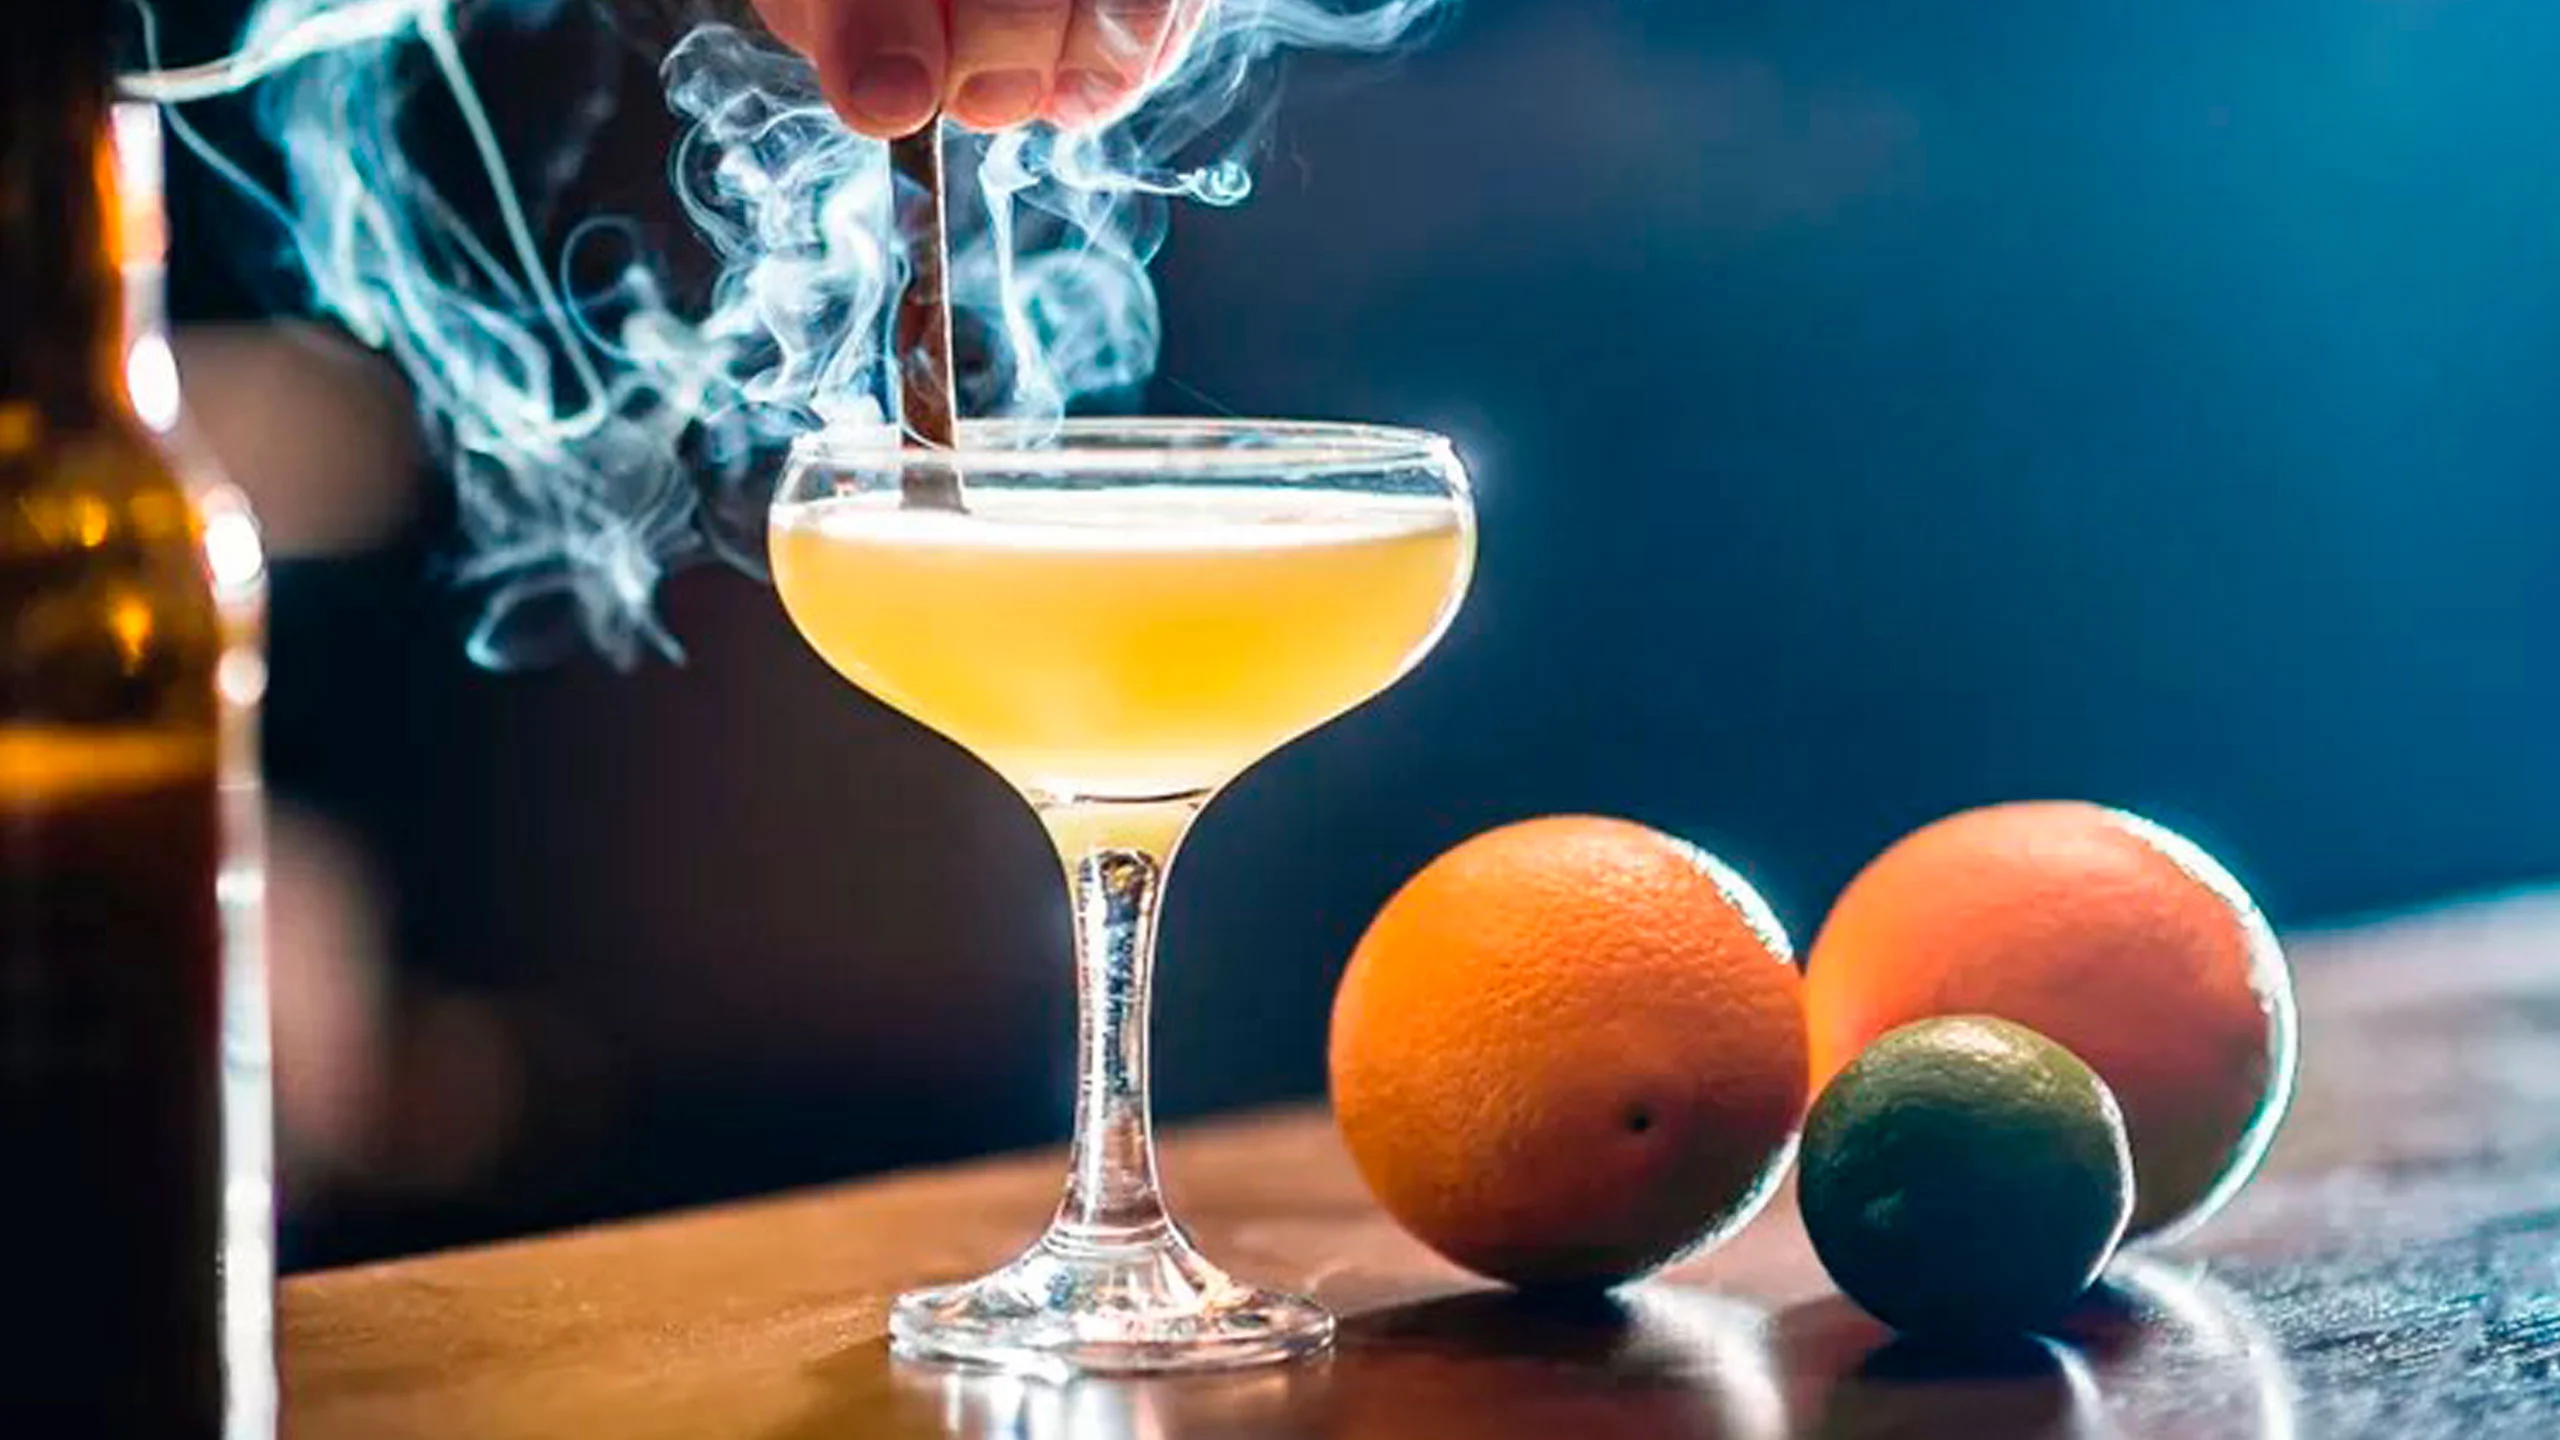 Preparar cocteles ahumados es fácil con estos trucos de bartender